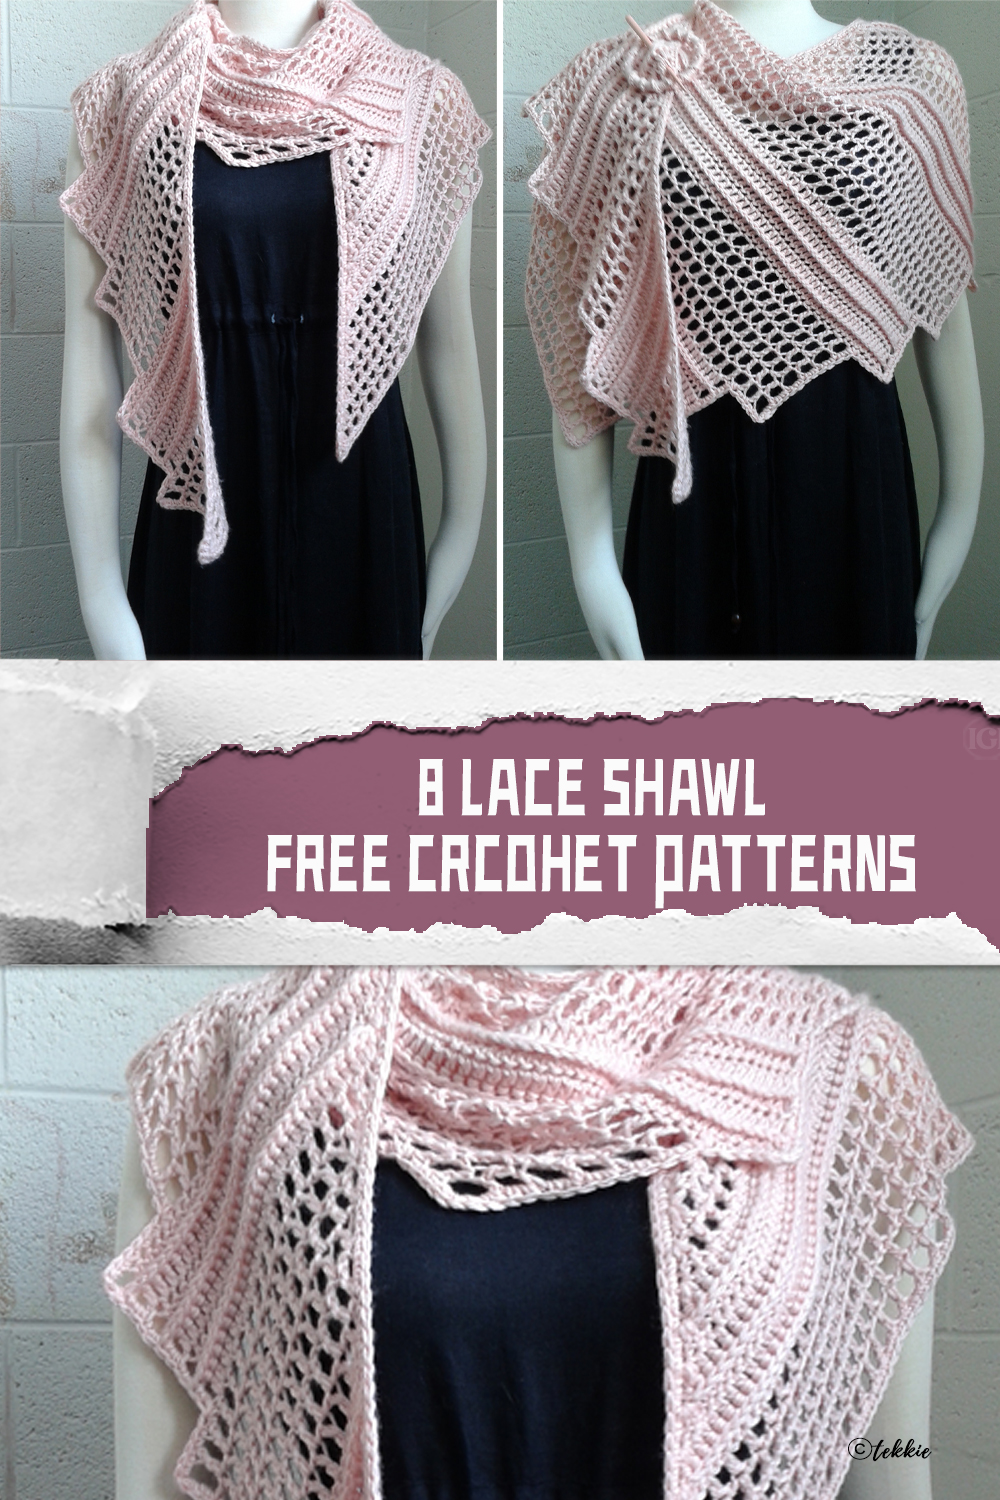 8 Lace Shawl FREE Crochet Patterns 